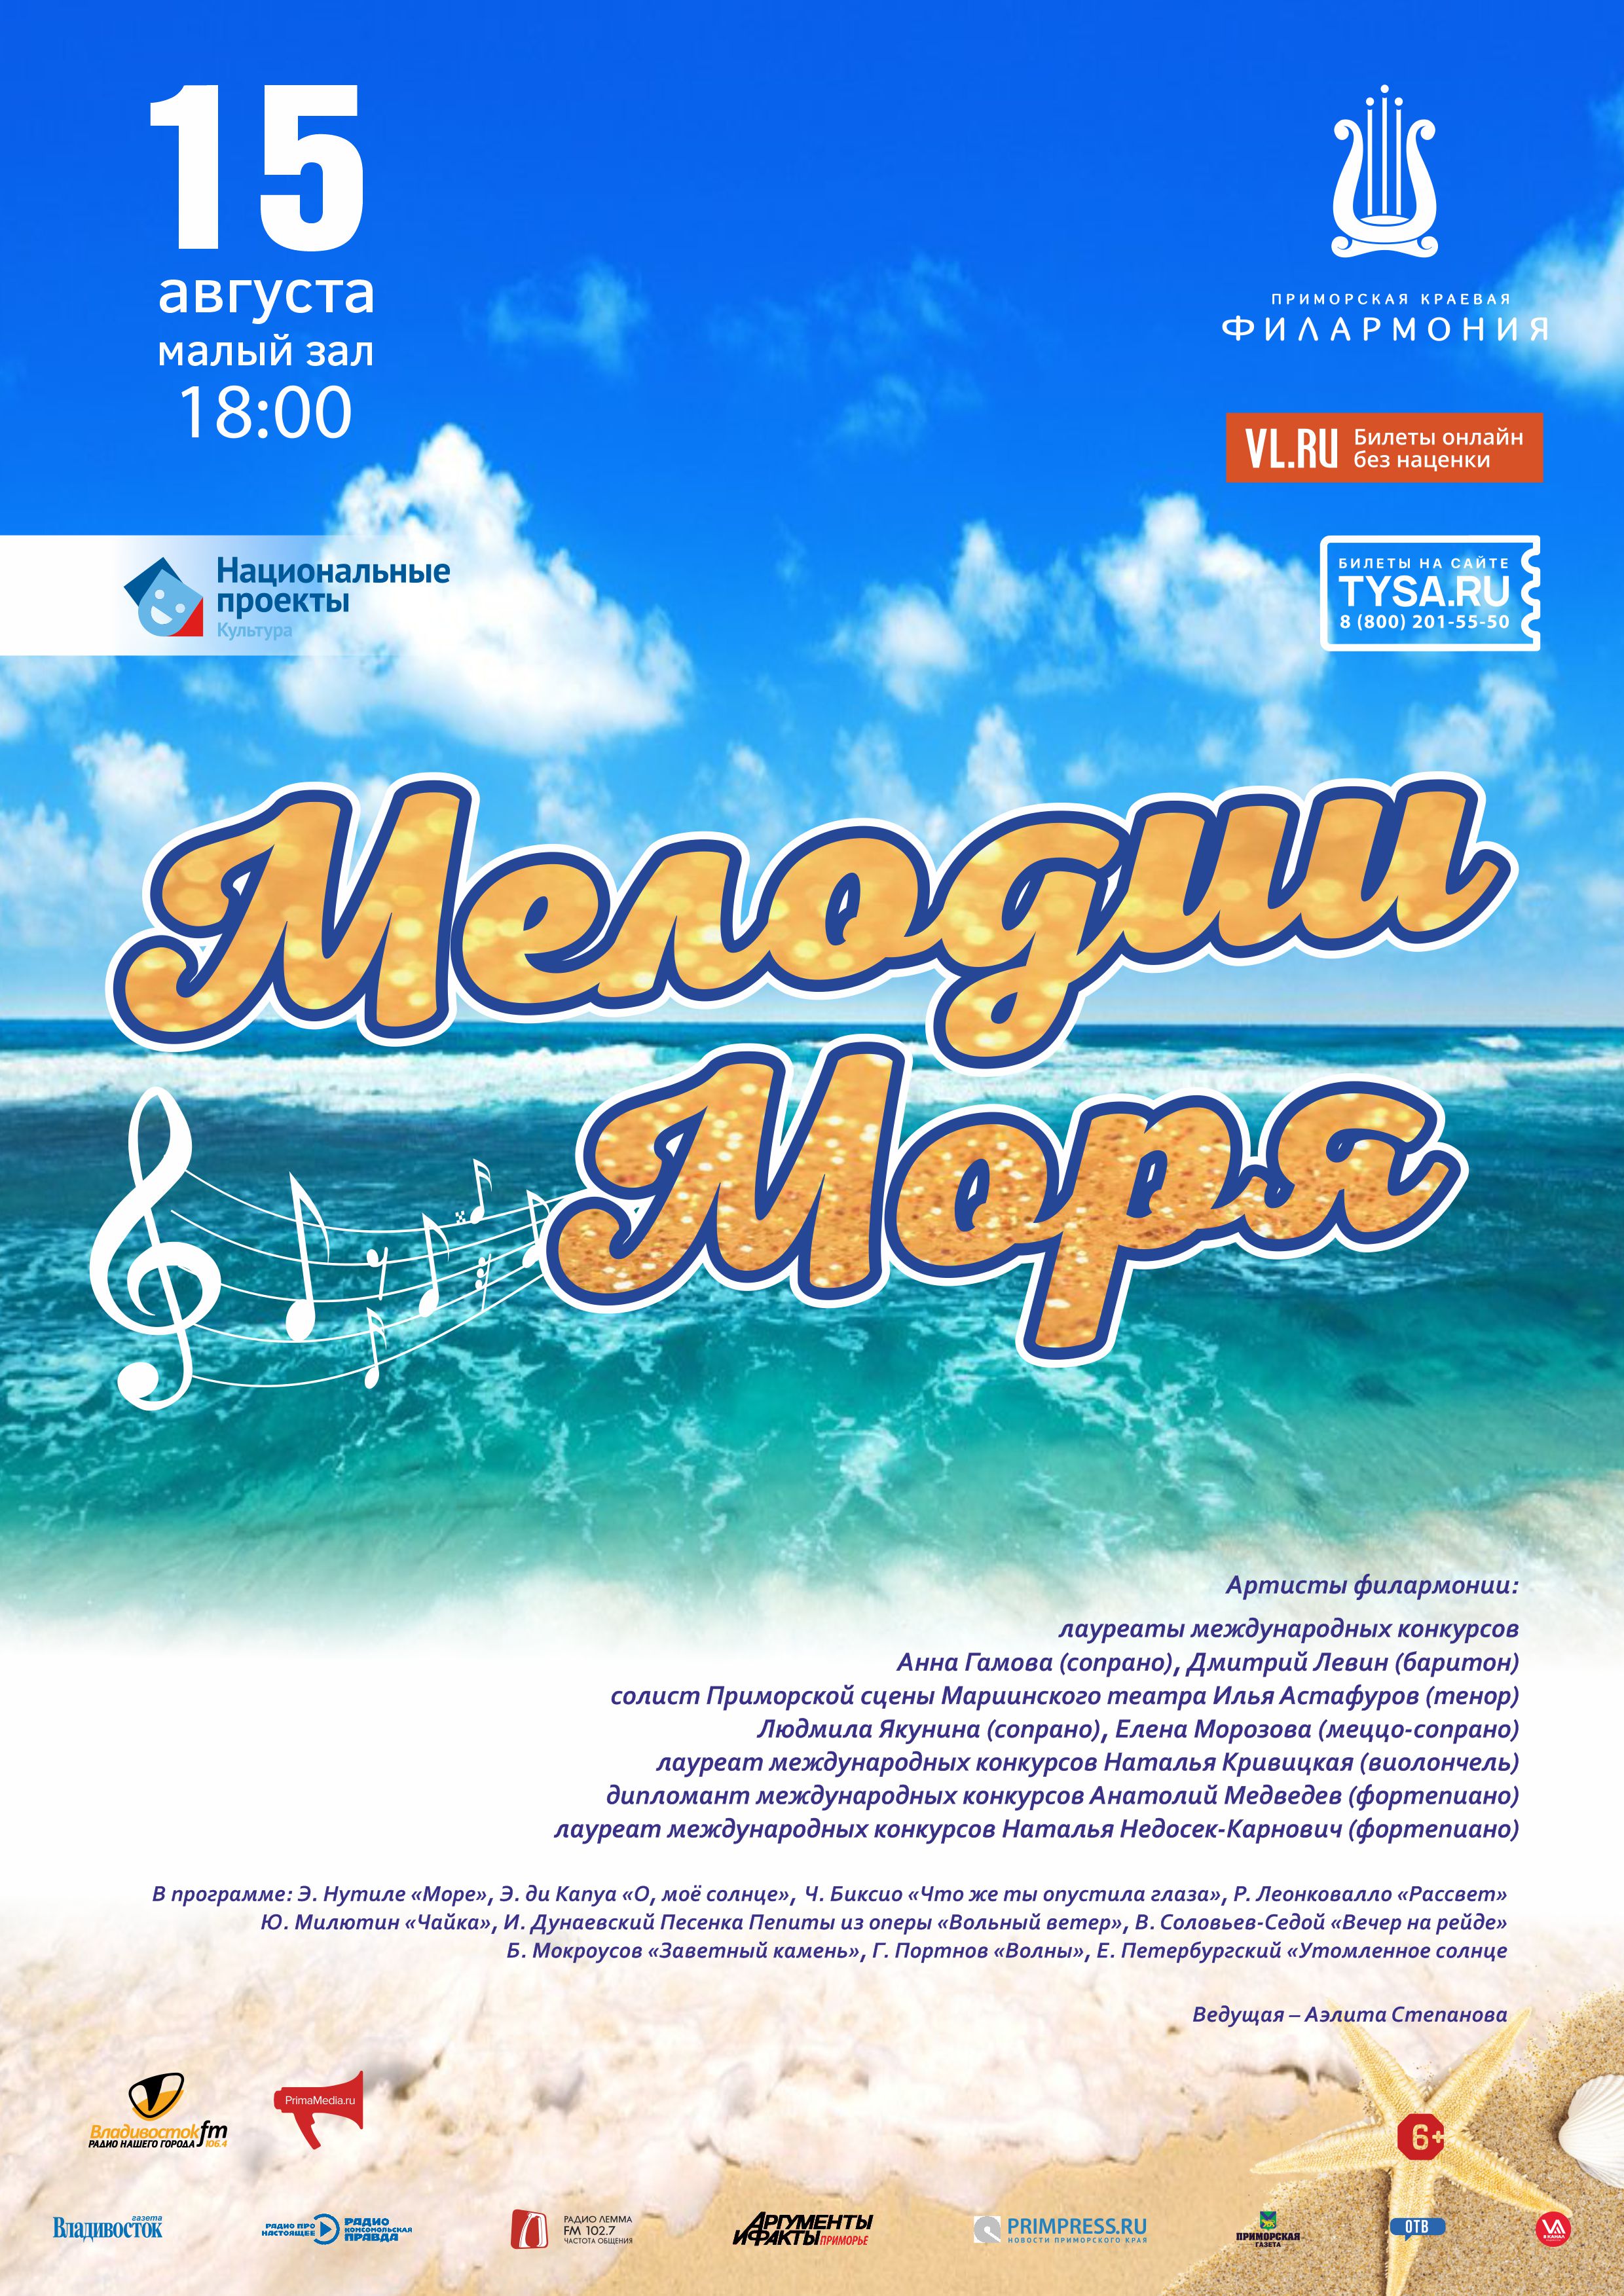 15 августа. Концертная программа «Мелодии моря»